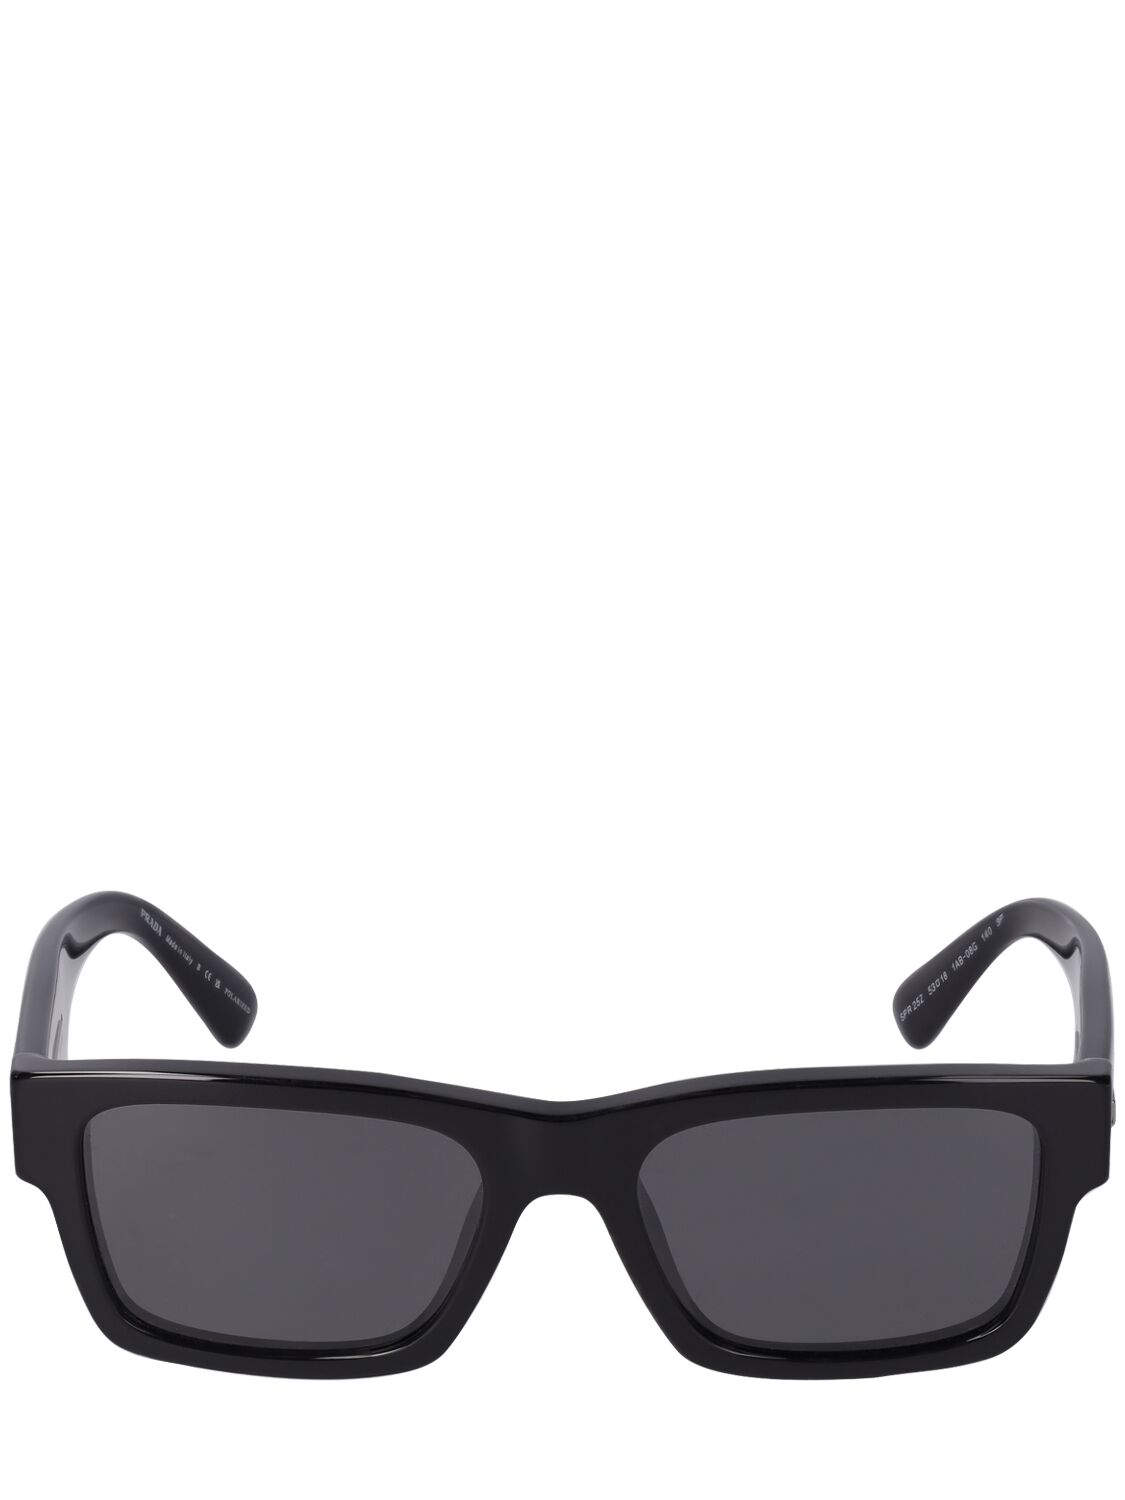 Prada Heritage Squared Acetate  Sunglasses In Black,grey